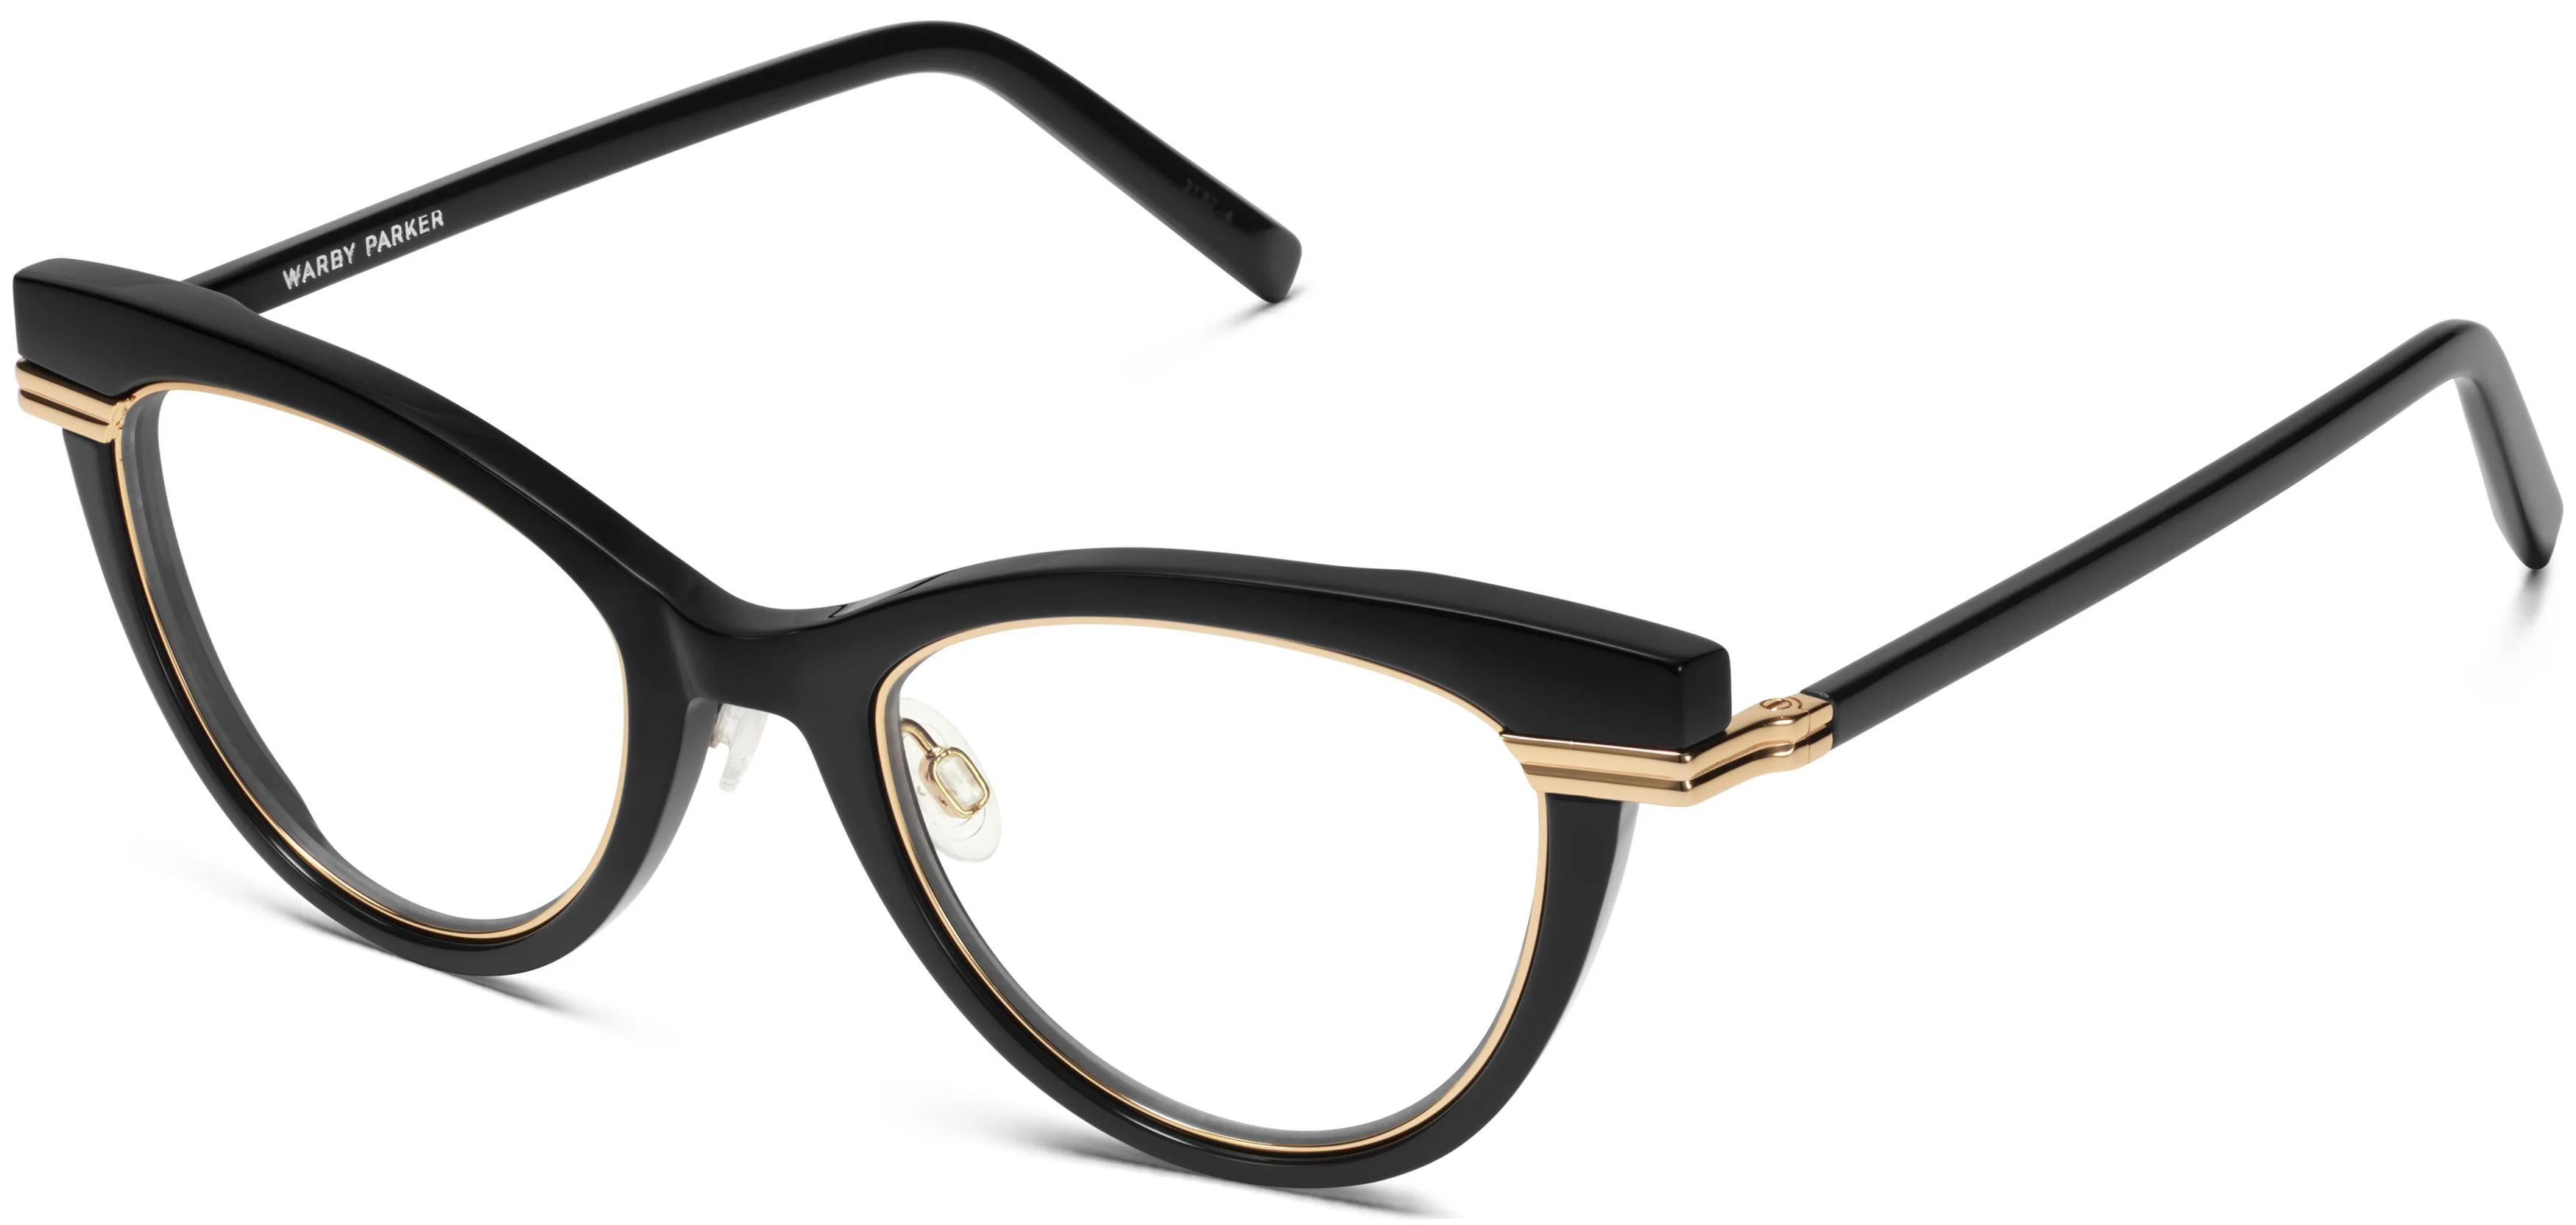 Aurelia Eyeglasses in Jet Black with Polished Gold | Warby Parker | Warby Parker (US)